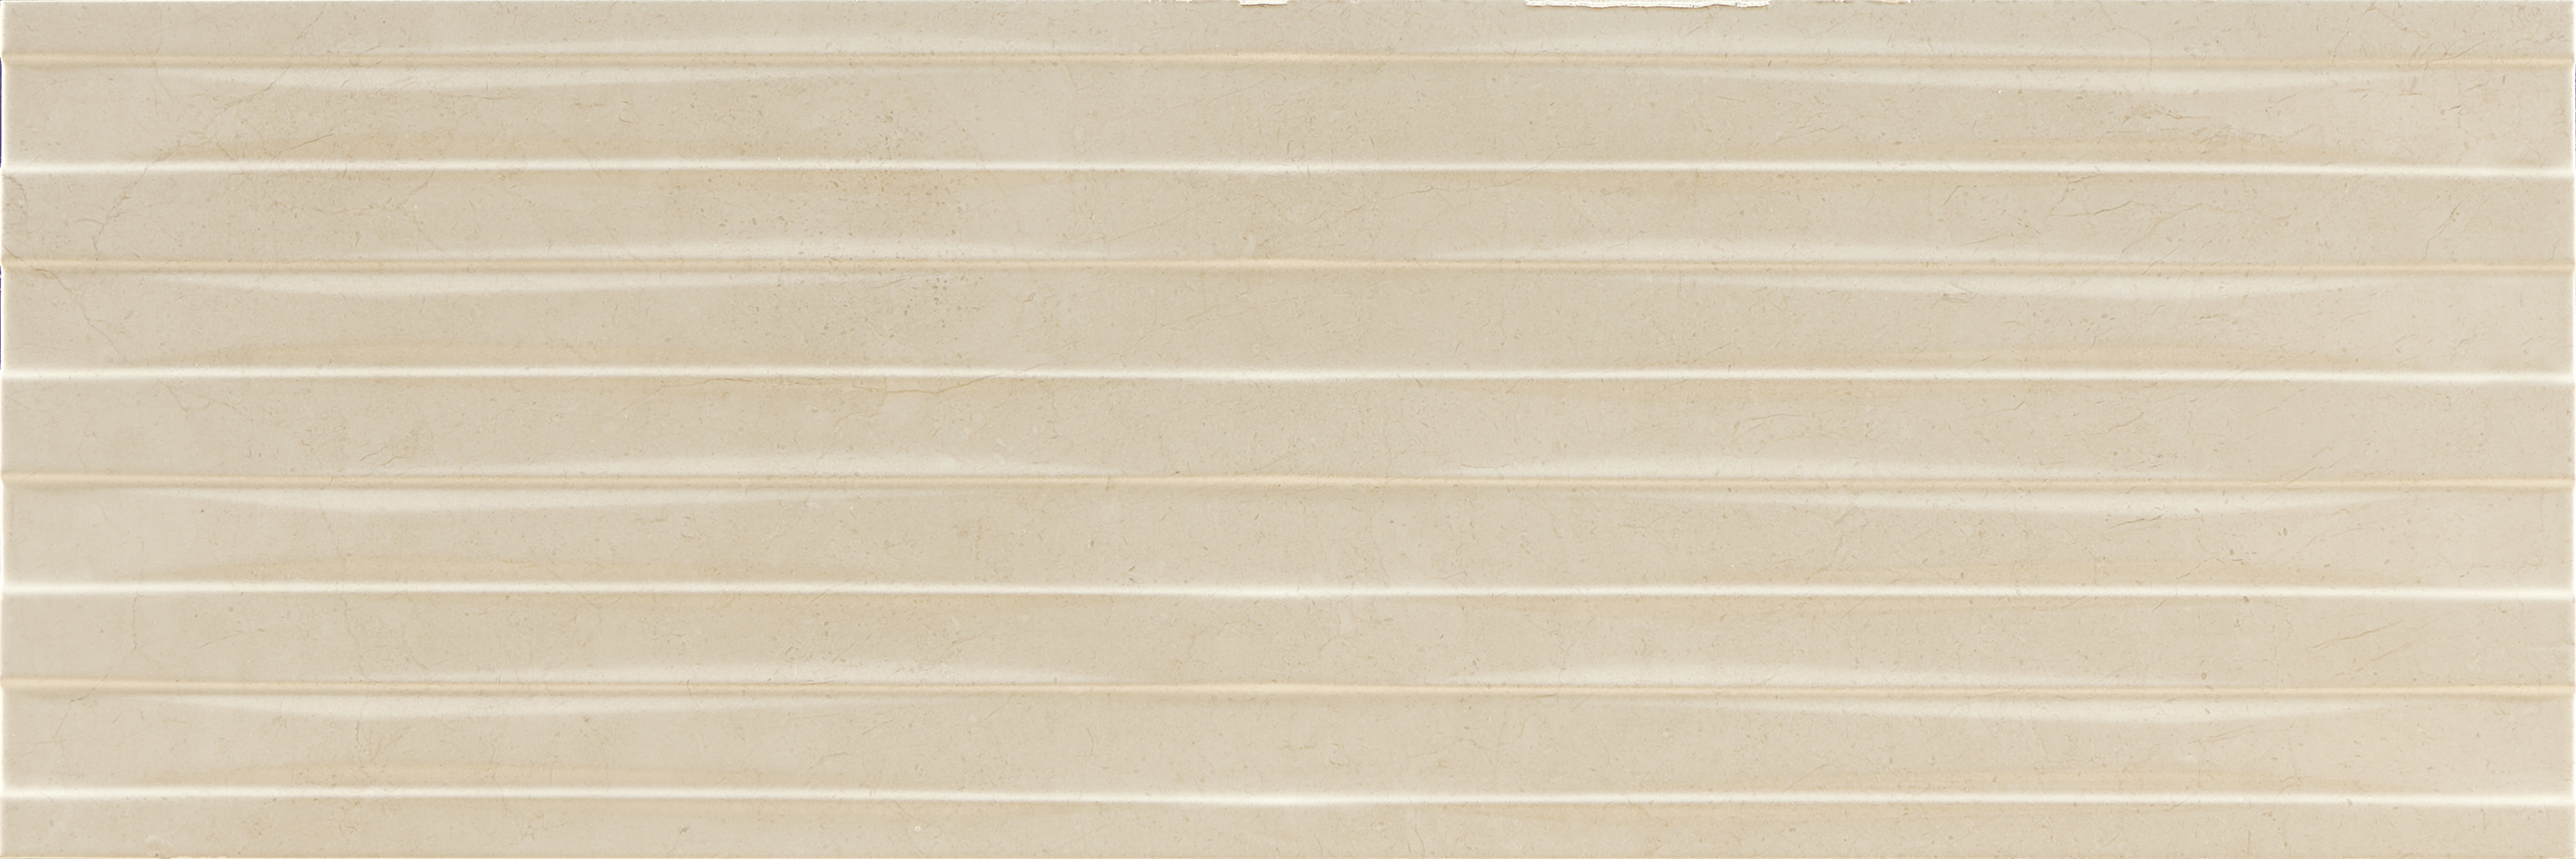 Argenta płytki dekoracyjne kremowy marmur 40x120